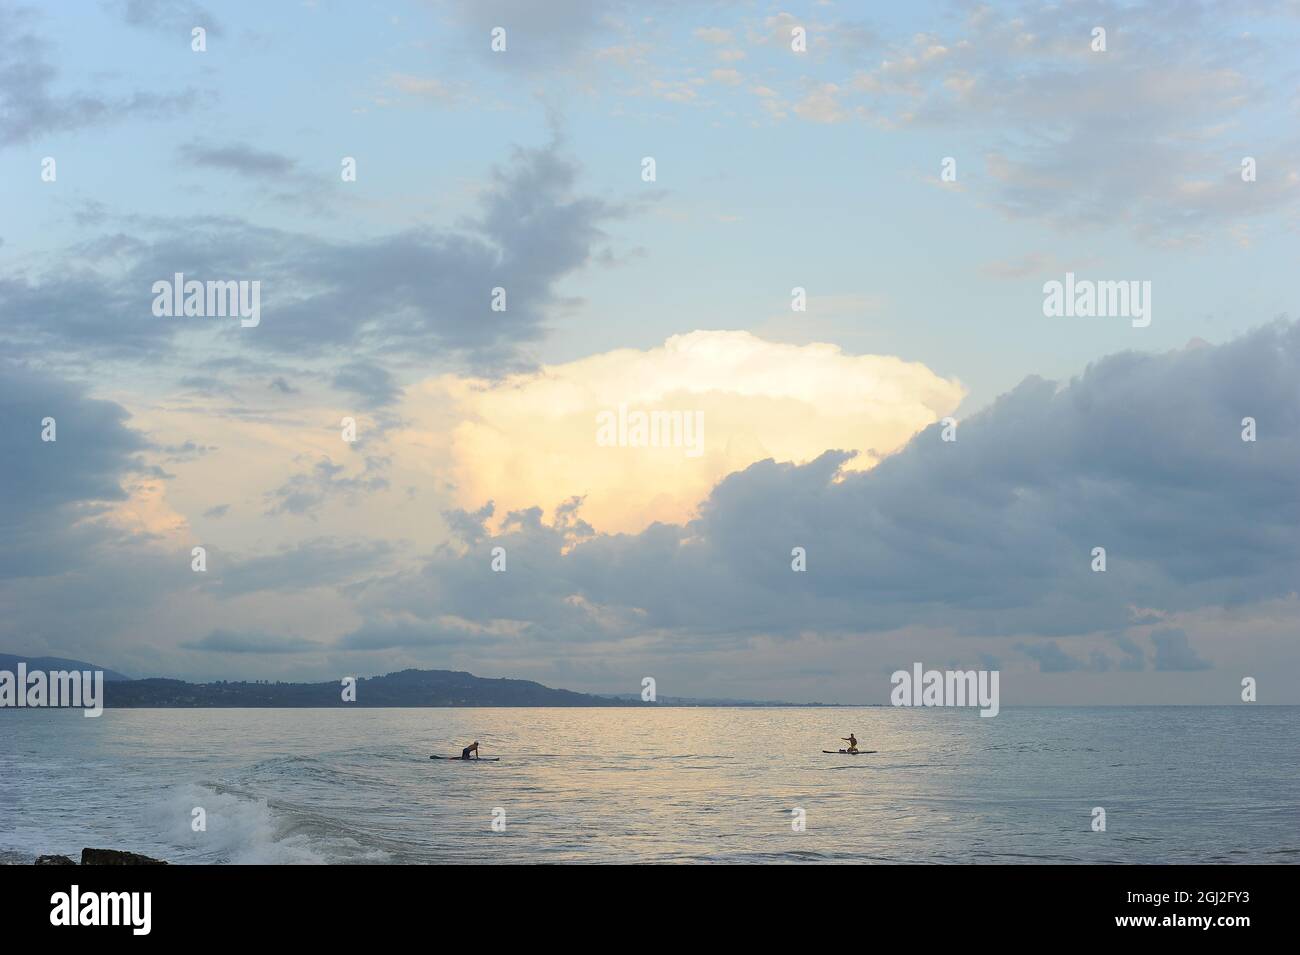 Mer Noire en Abkhazie. Petites figures de surfeurs. Coucher de soleil bleu pastel. Repos sur la mer. Banque D'Images